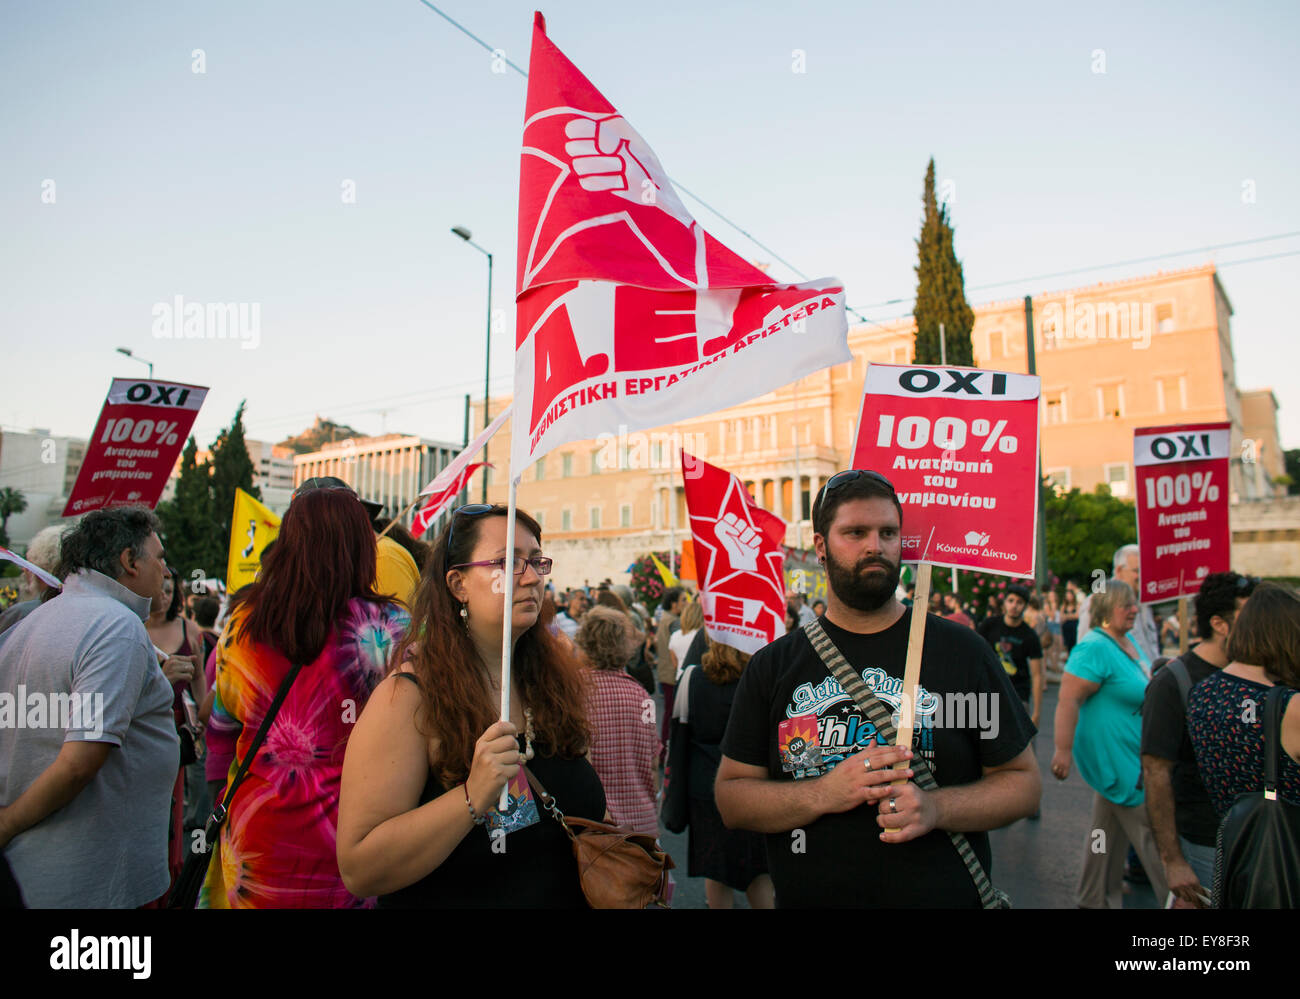 Des milliers de personnes manifestent à Athènes contre l'UE a imposé une augmentation de la TVA sur les produits et services. Le Parlement grec v Banque D'Images